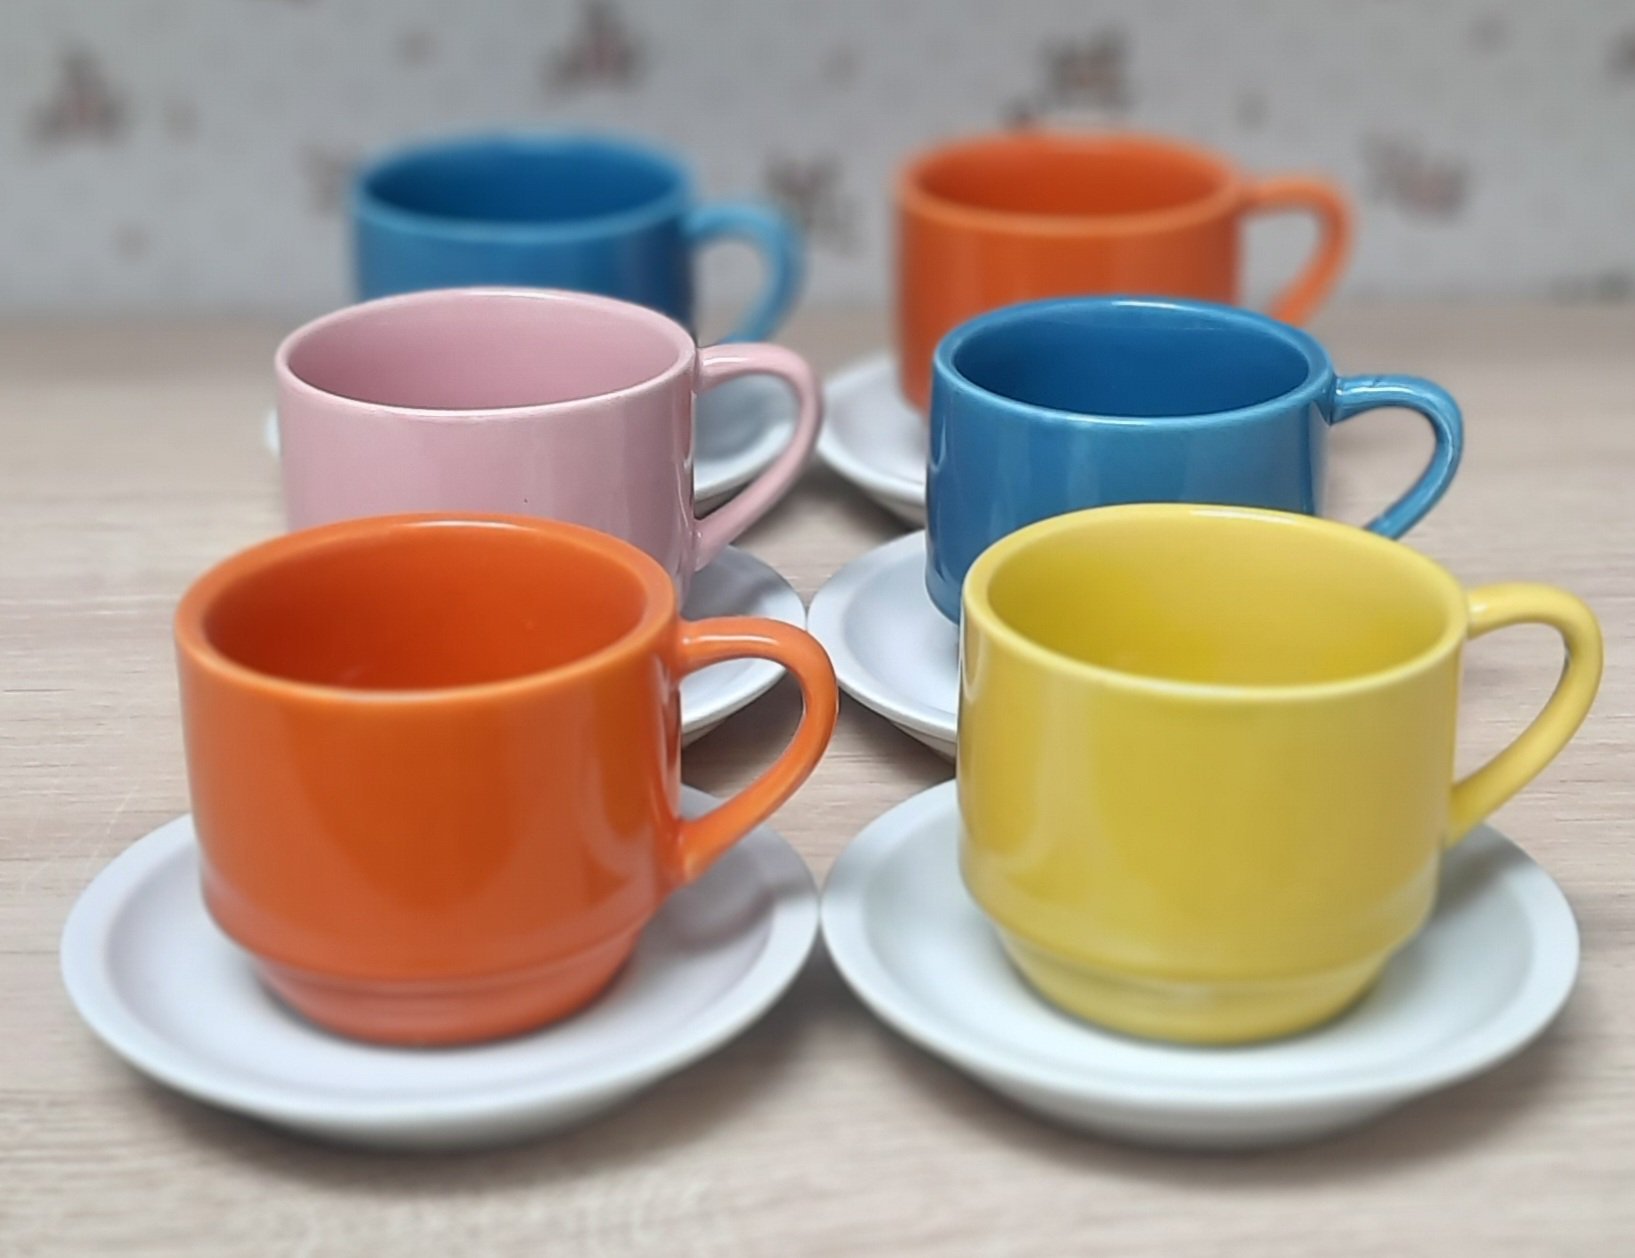 Jogo 6 xícaras de Café e Chá com pires - 200 ml Empilháveis - Porcelana Colorida - 5